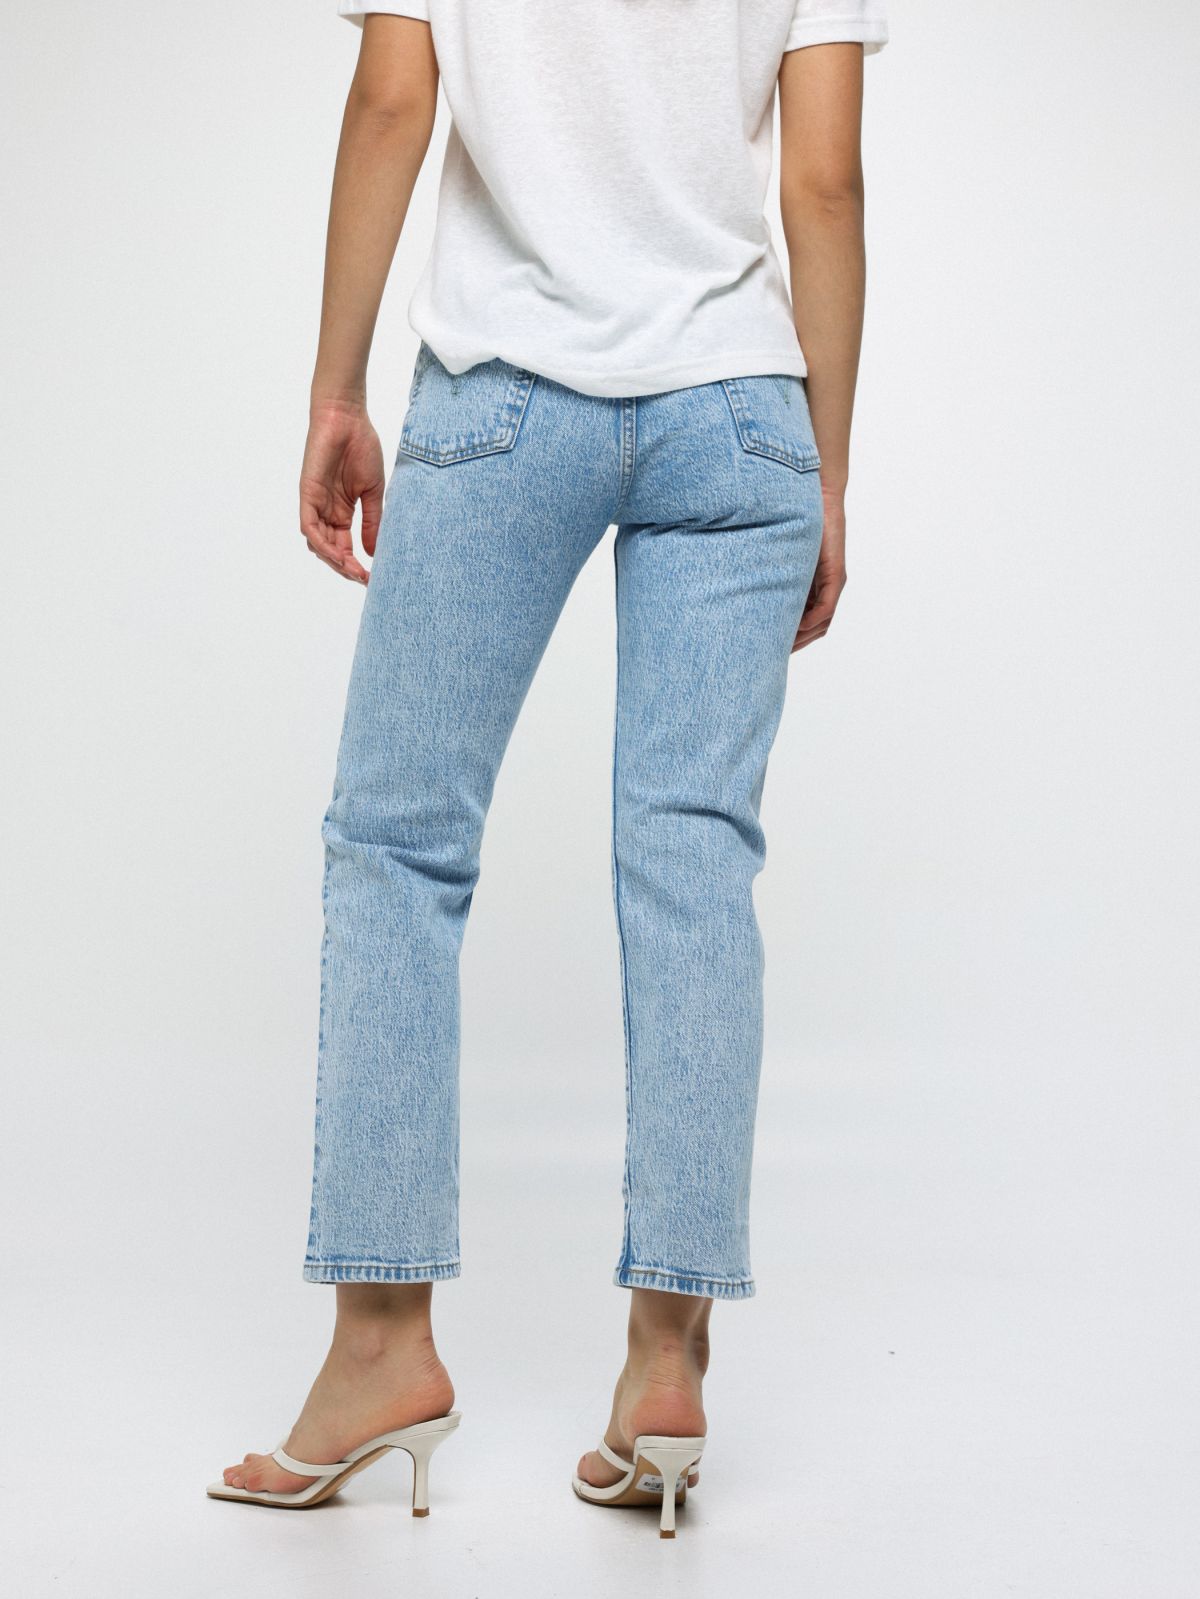  ג'ינס גבוה בשטיפה בהירה 501 CROP של LEVIS